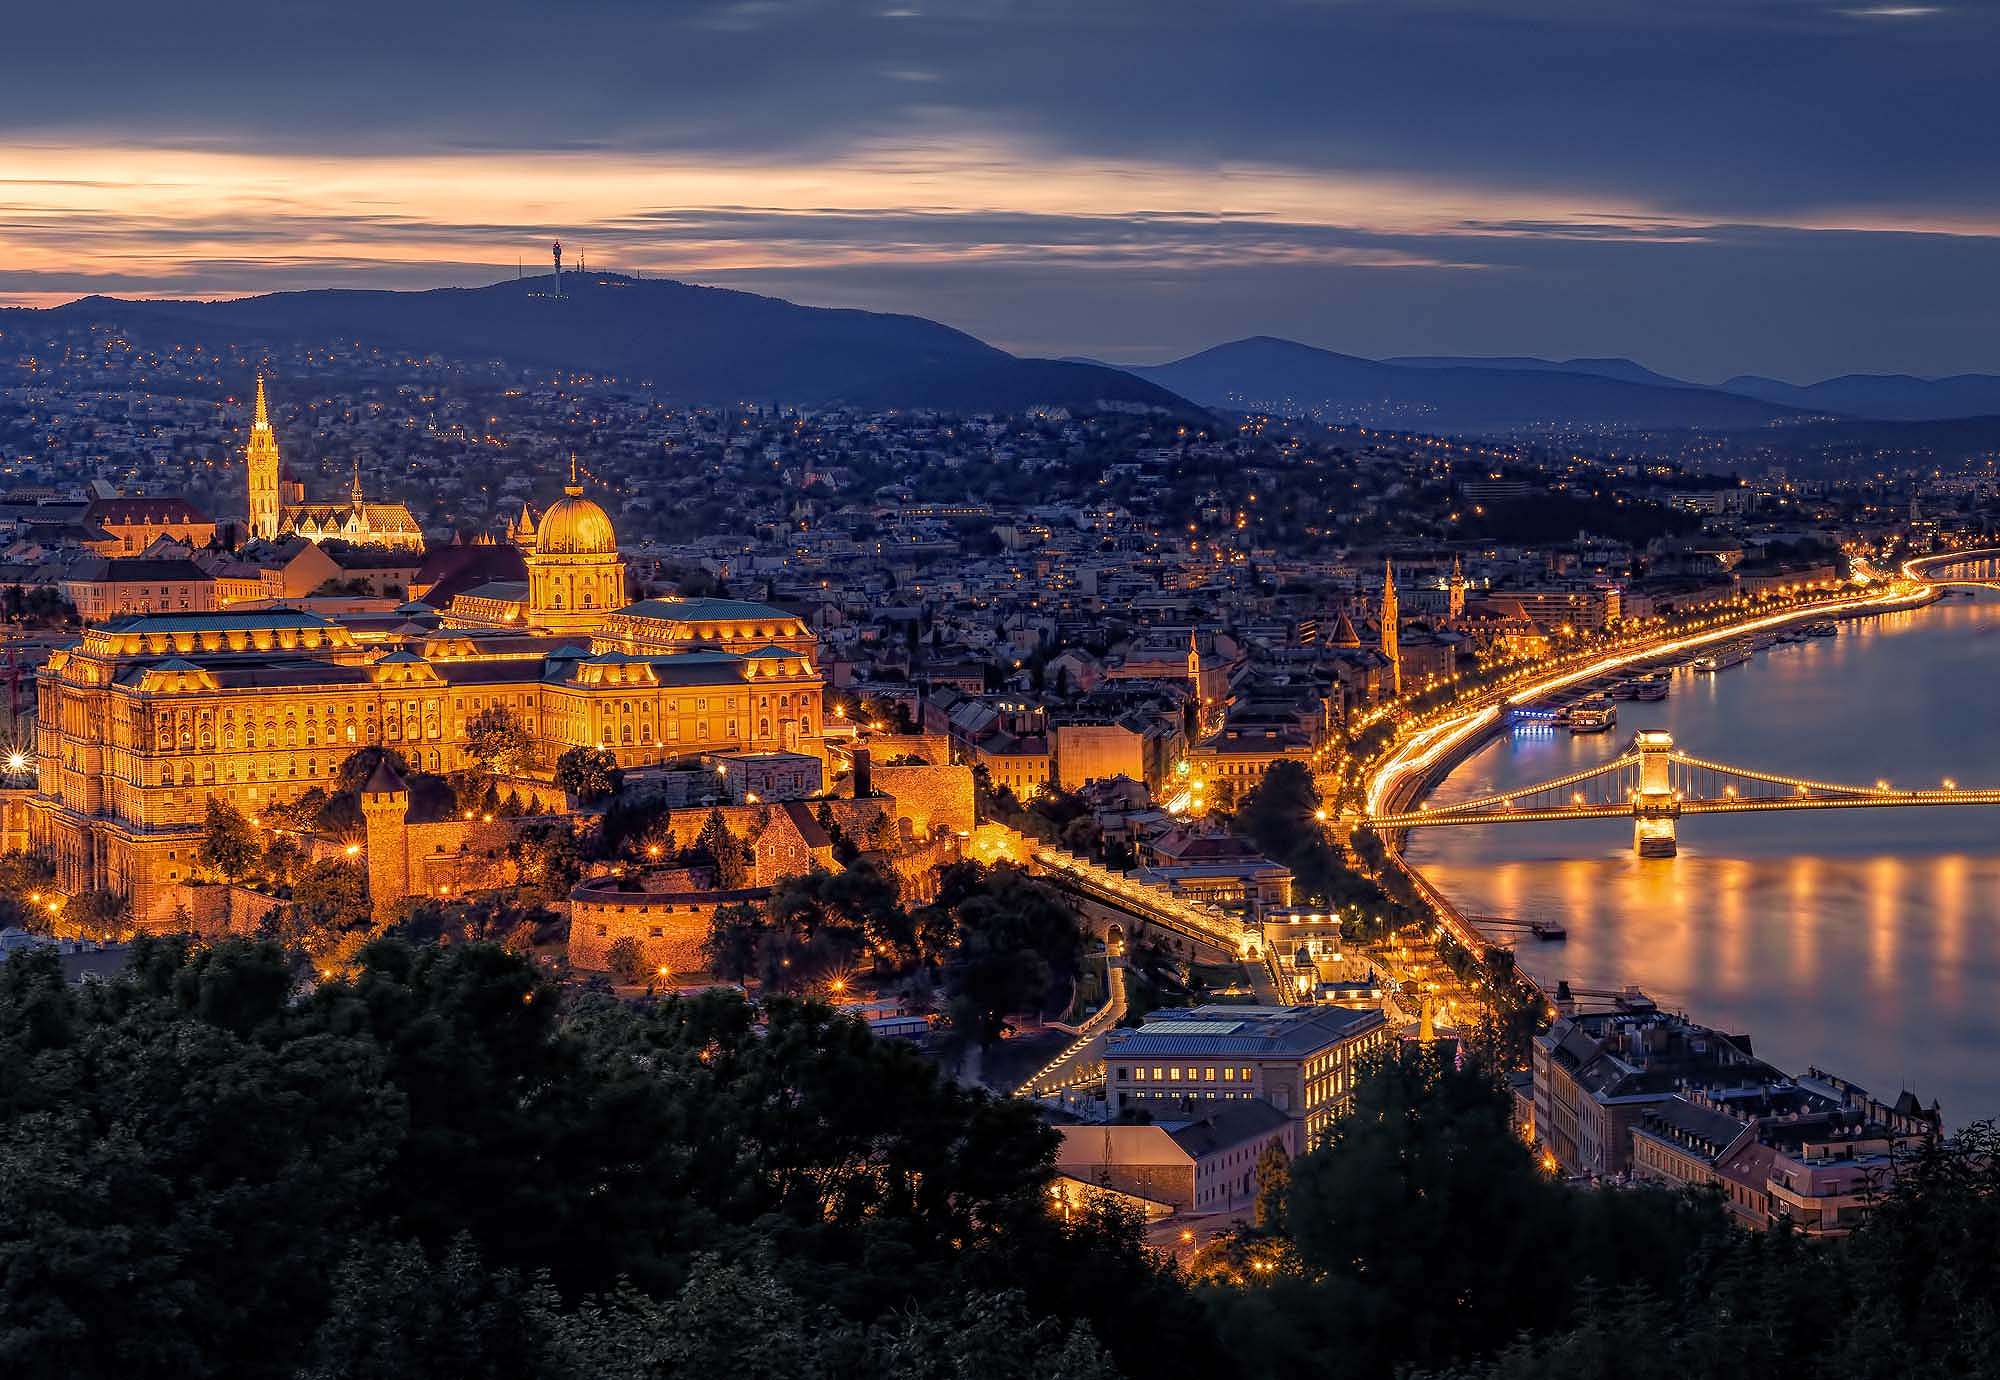 Fali poszter panorámakép Budapest éjszakai fényeivel, előtérben a Budai várral